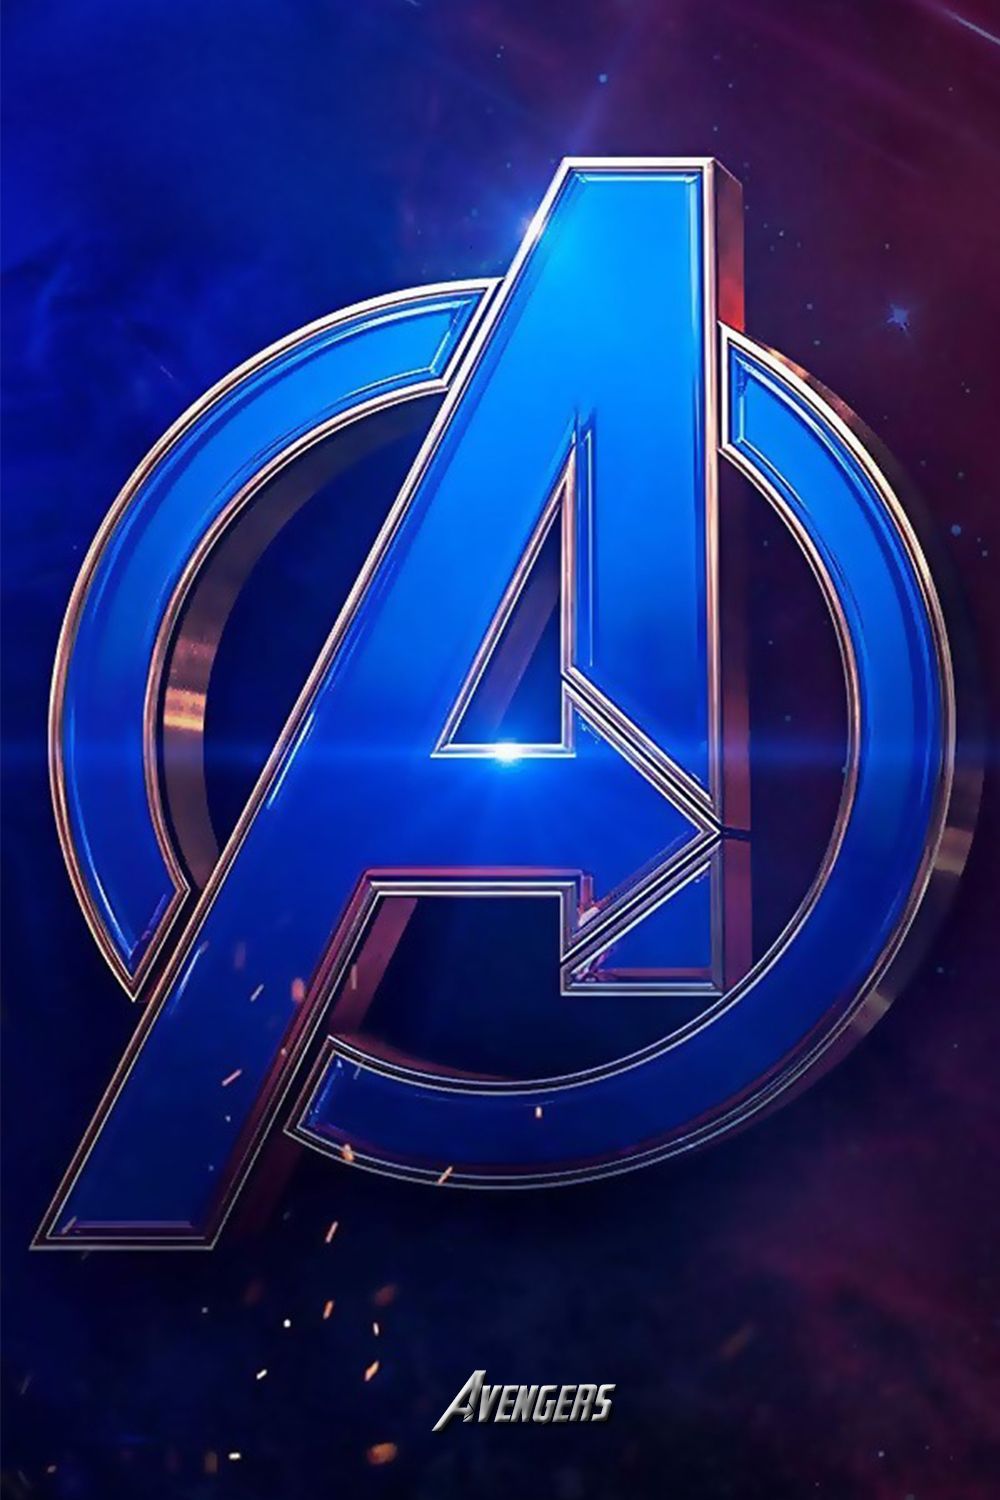 avengers wallpaper for mobil. Avengers wallpaper, Avengers logo, Marvel comics wallpaper